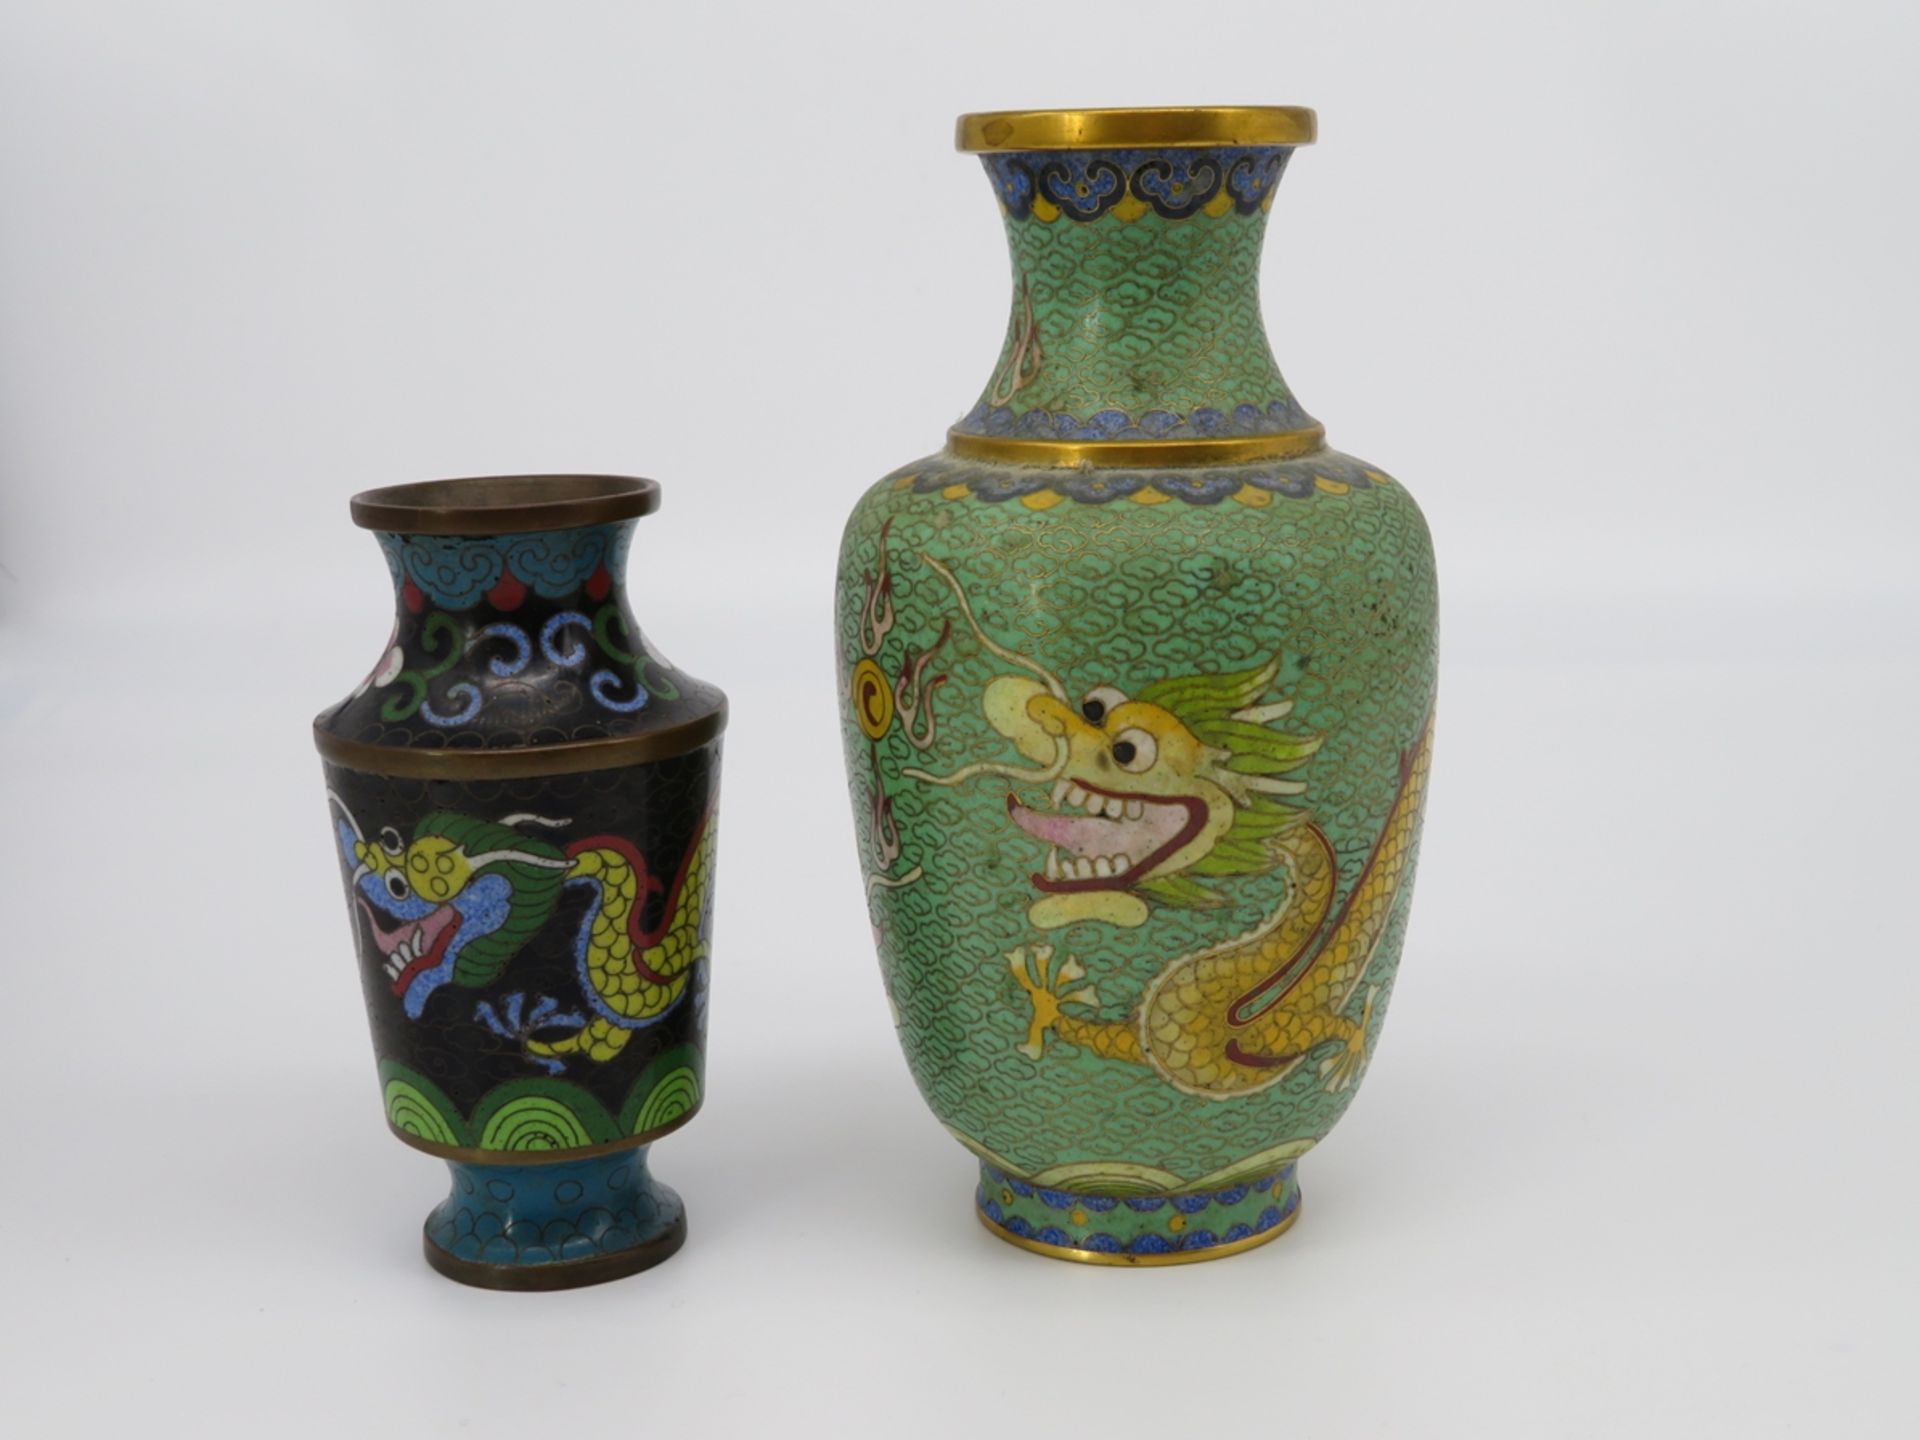 2 Cloisonné Vasen, China, farbiges Cloisonné, h 13/18 cm.